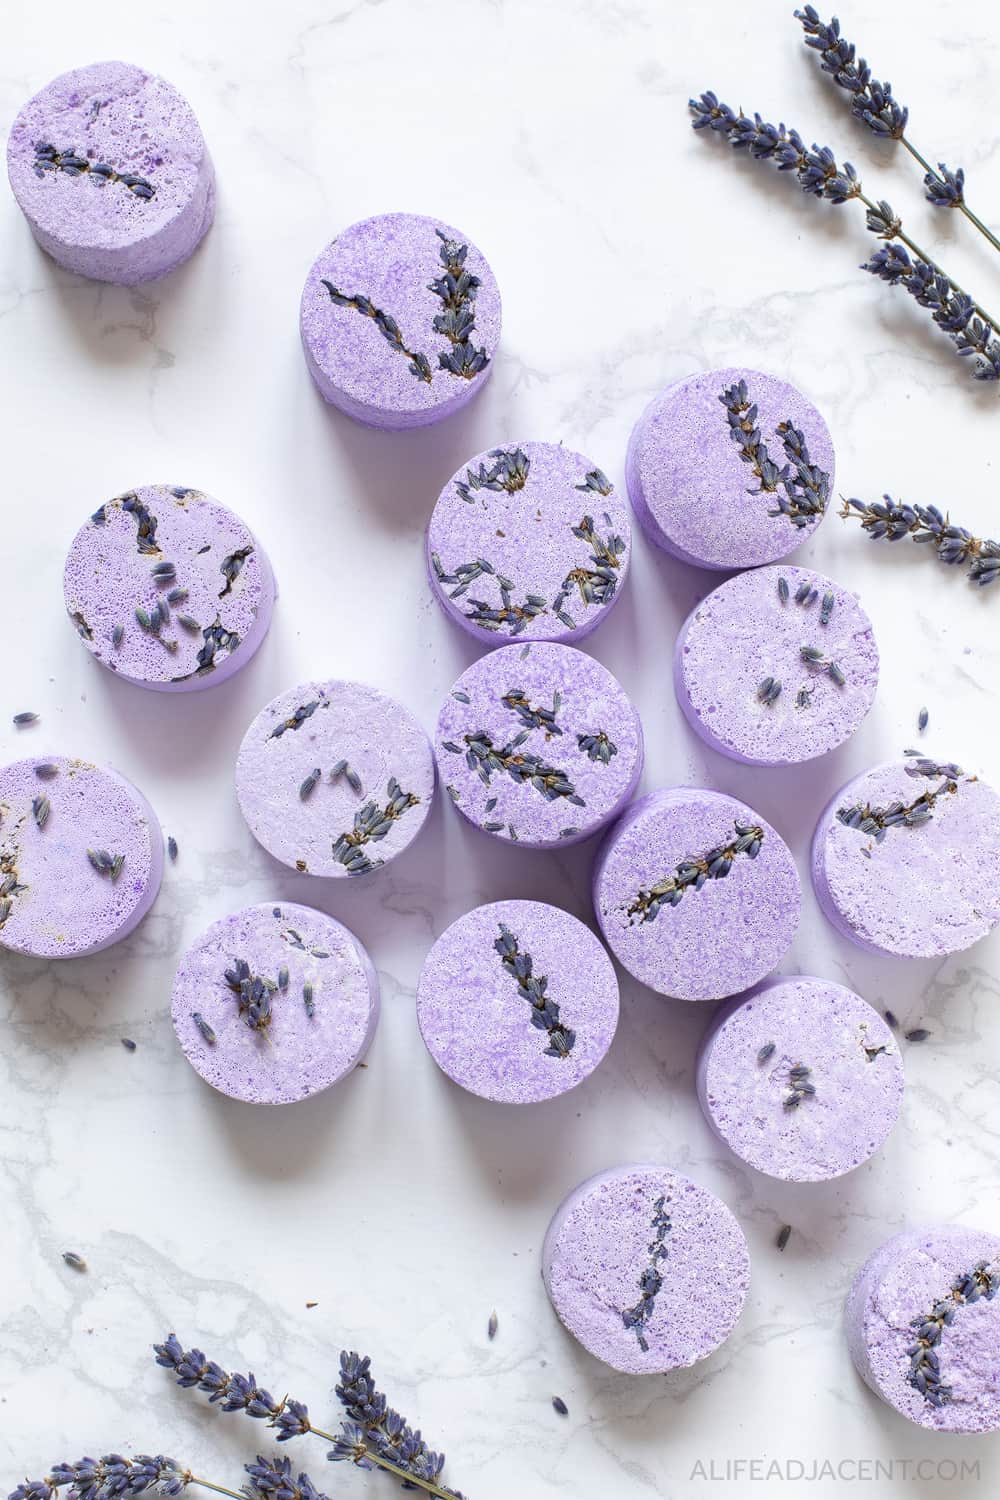 A group of purple DIY lavender shower steamer tablets